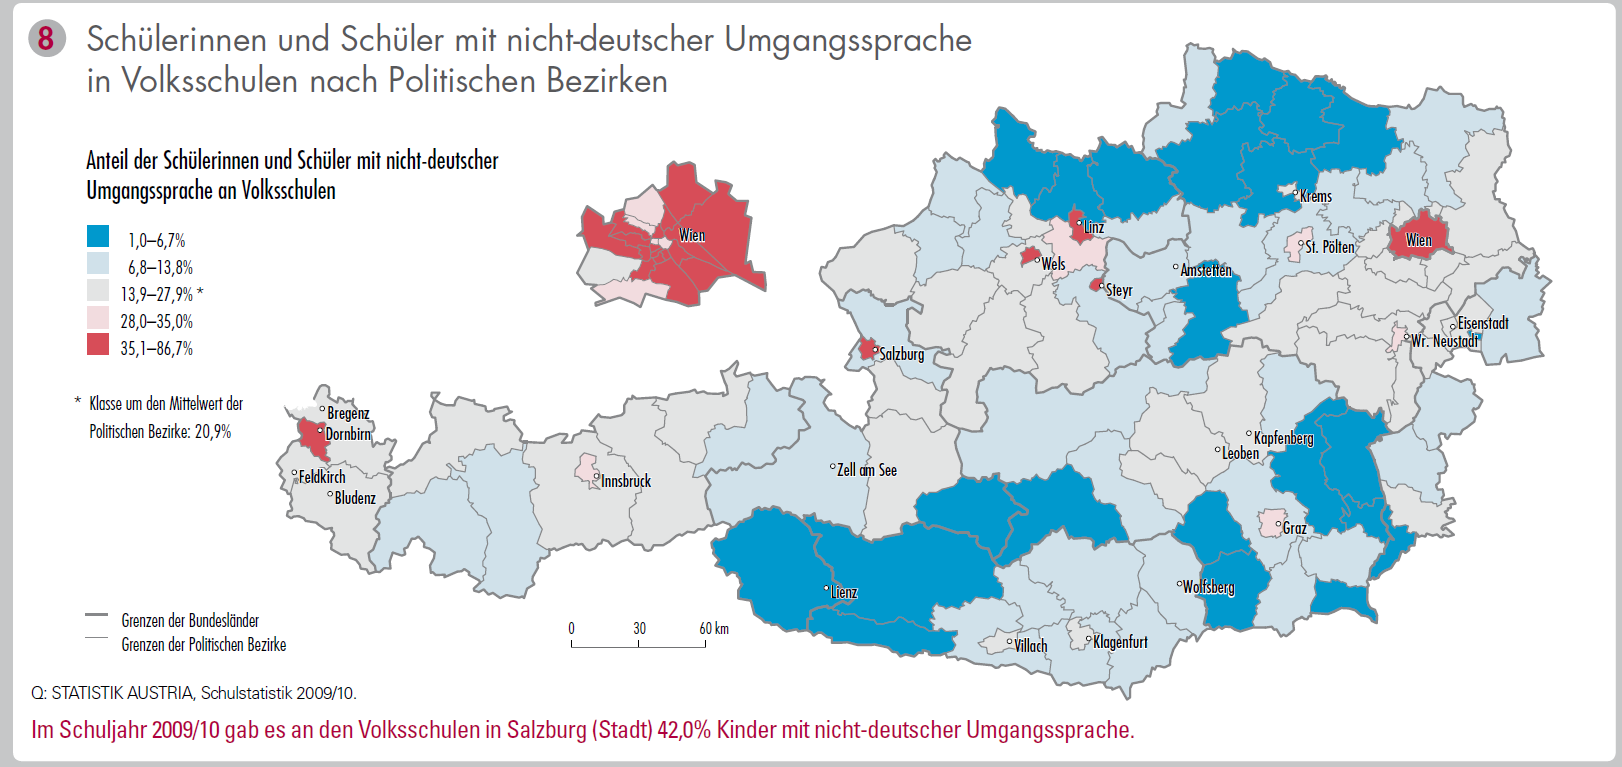 1-7% 35-87% SCHULE VS nicht deutsch 3-6% 24-47% BEV Ausld.